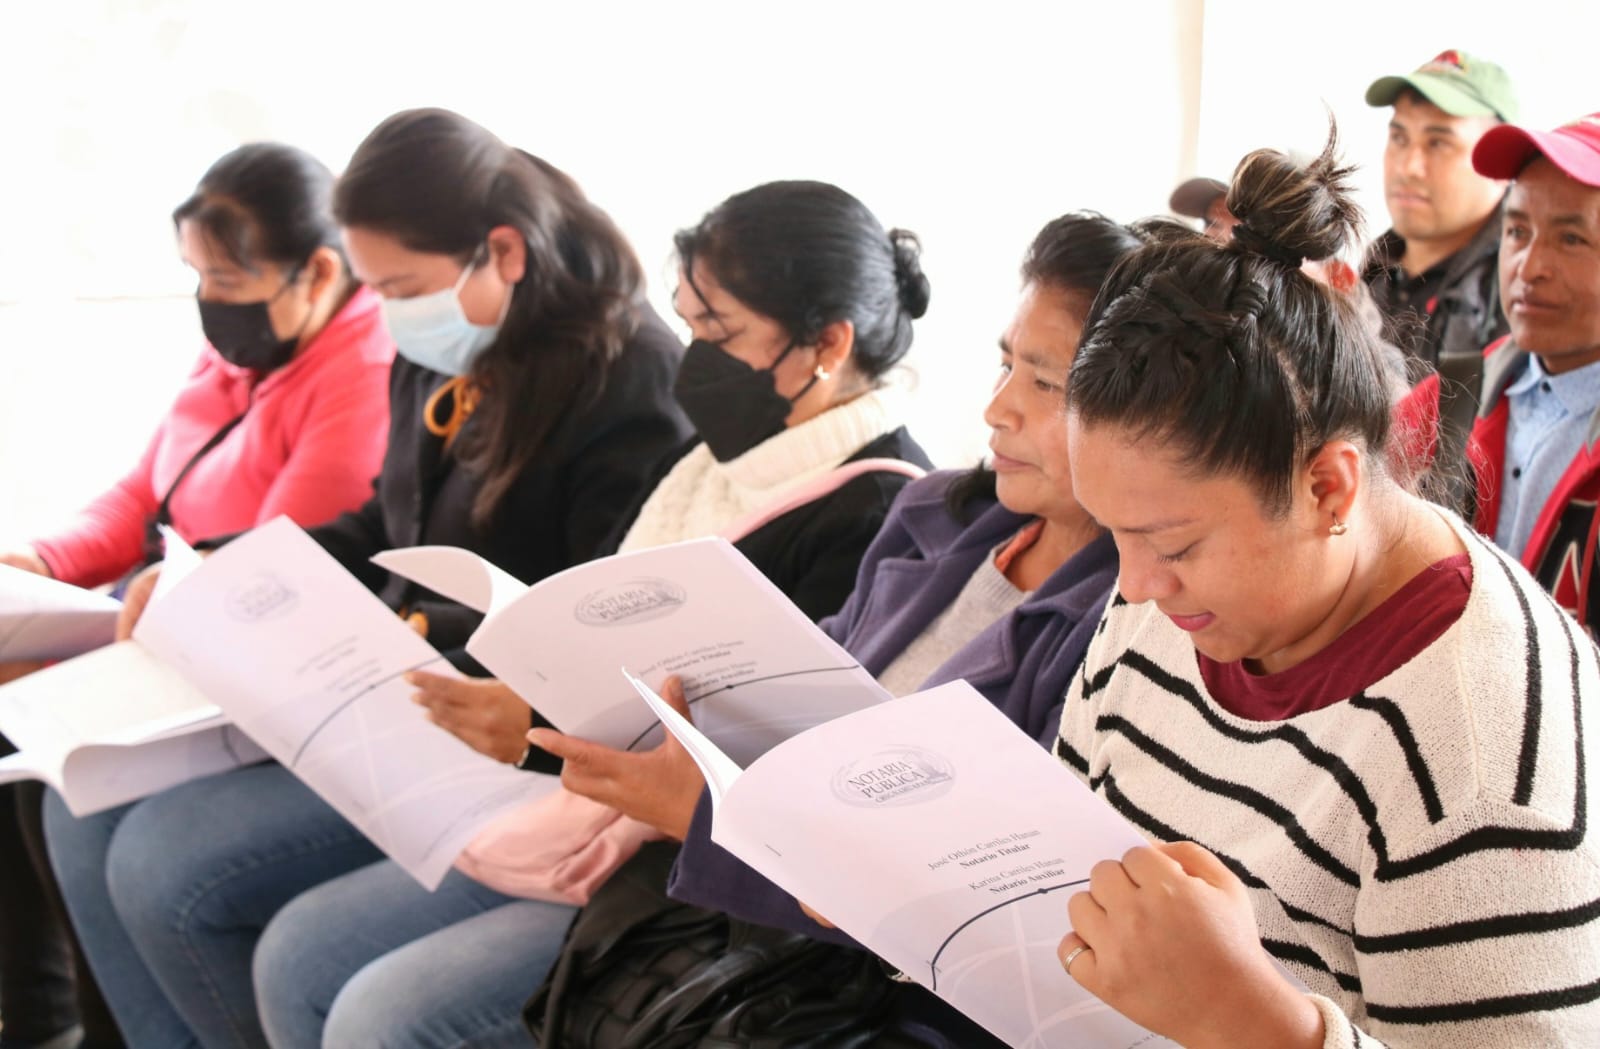 Tras solicitud en “Martes Ciudadano”, gobierno estatal brinda certeza jurídica a 27 familias de Zacatlán